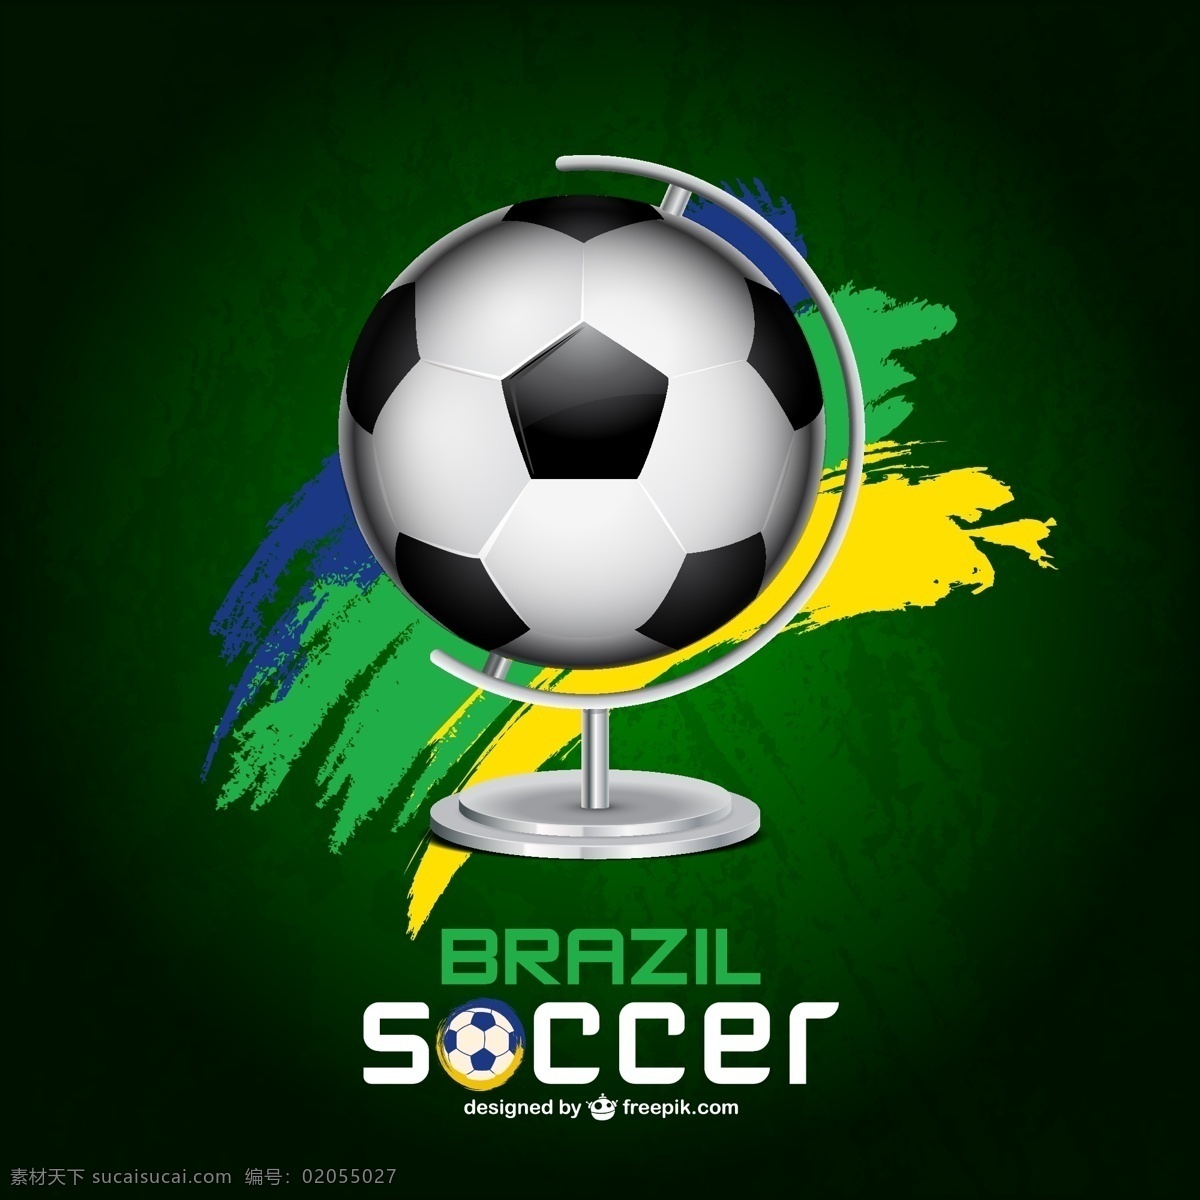 用一个足球球 背景 海报 足球 运动 绿色 模板 地球 绿色背景 壁纸 布局 游戏 杯 球 黄 巴西 黑色